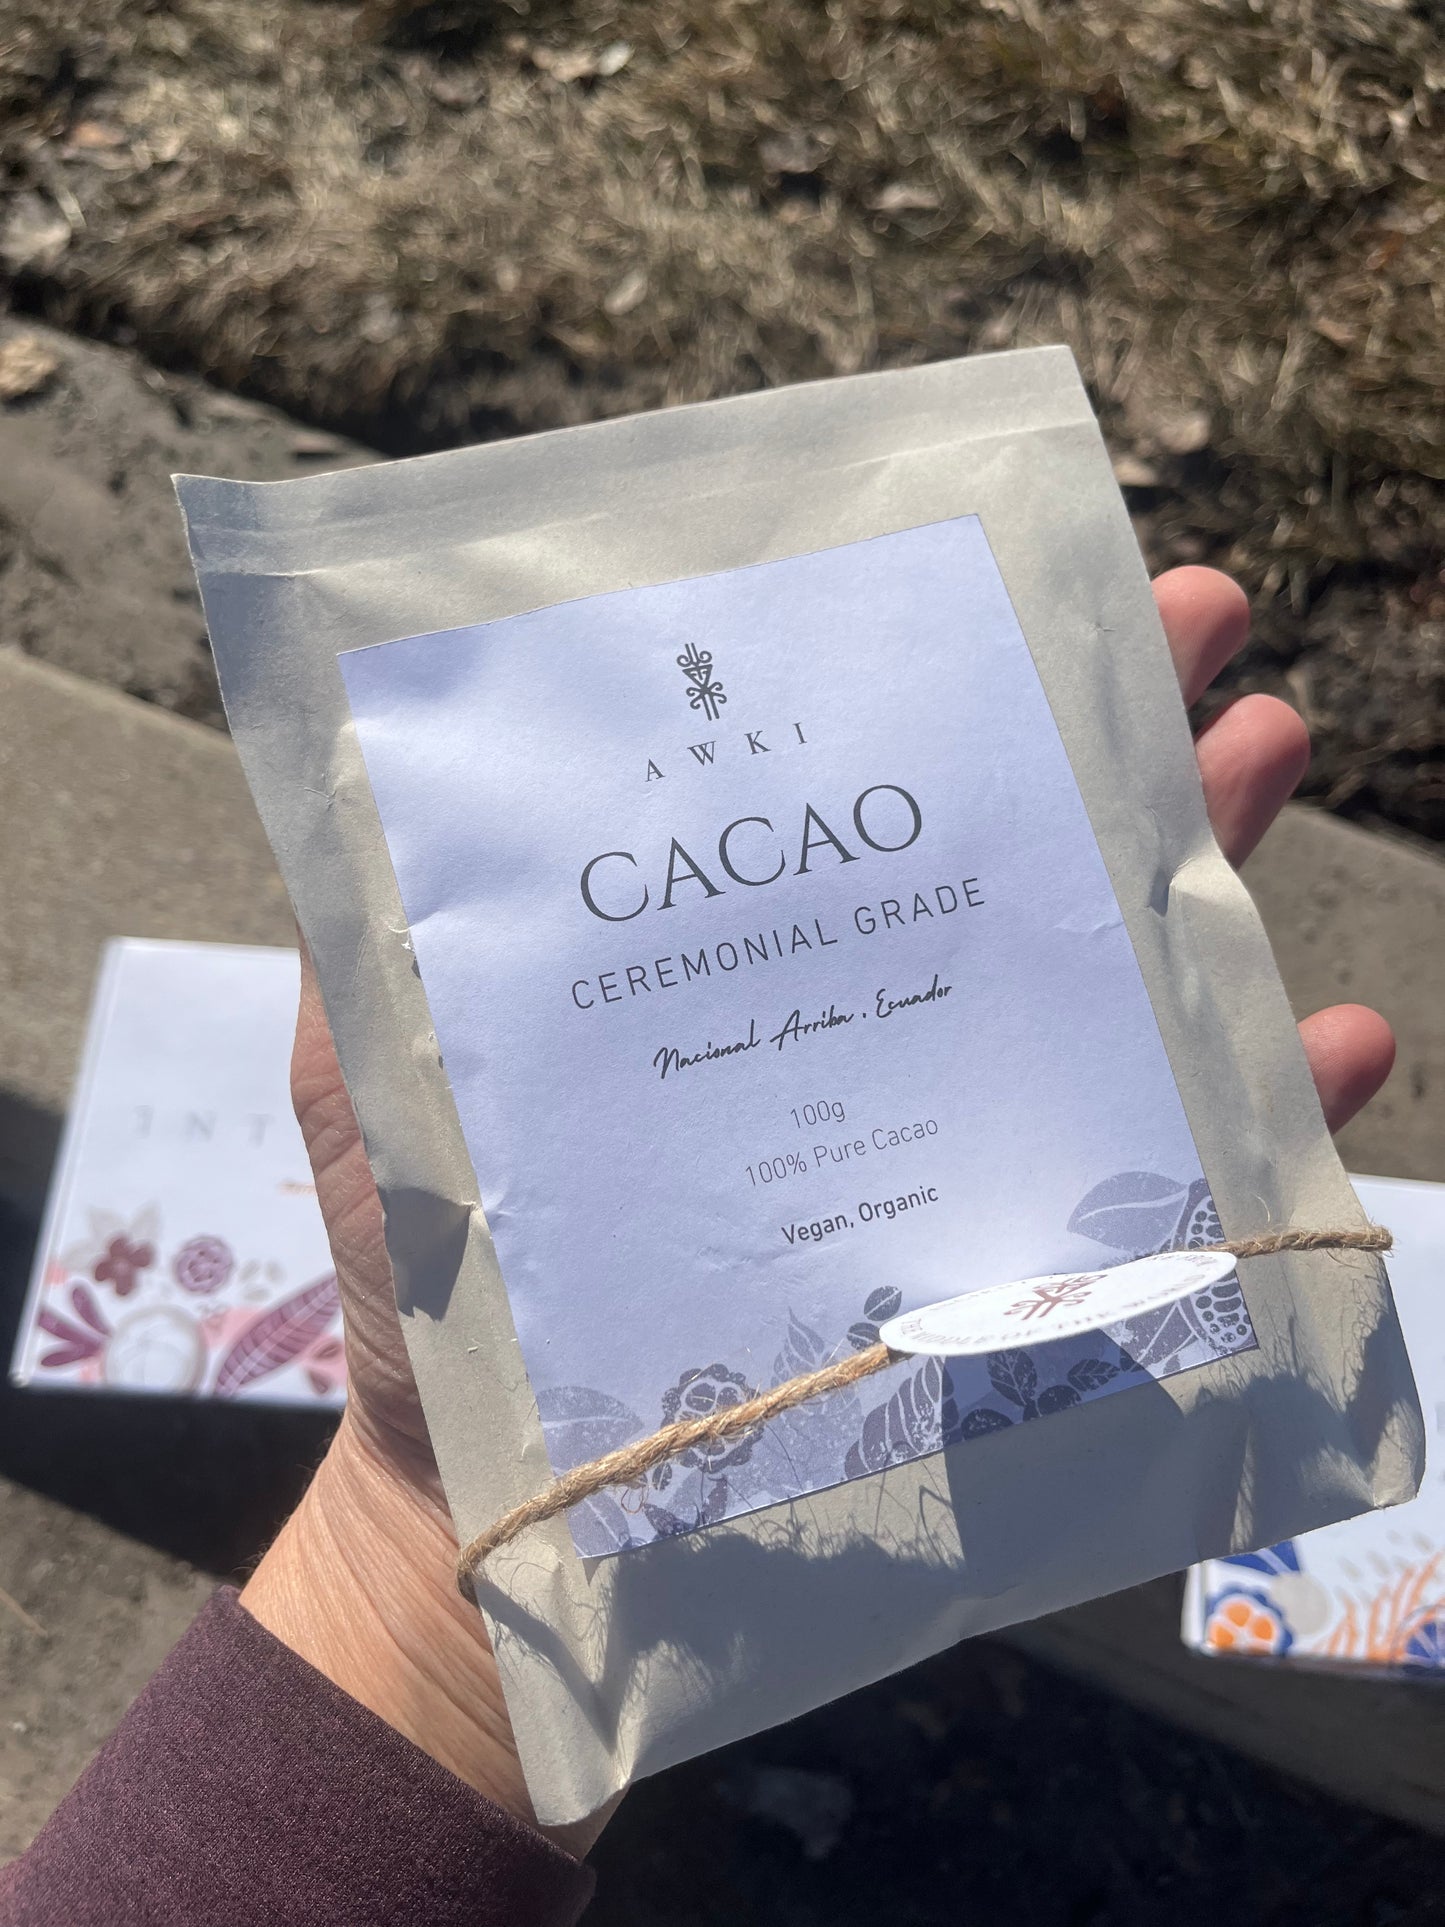 AWKI 100% cacao ceremonial cacao